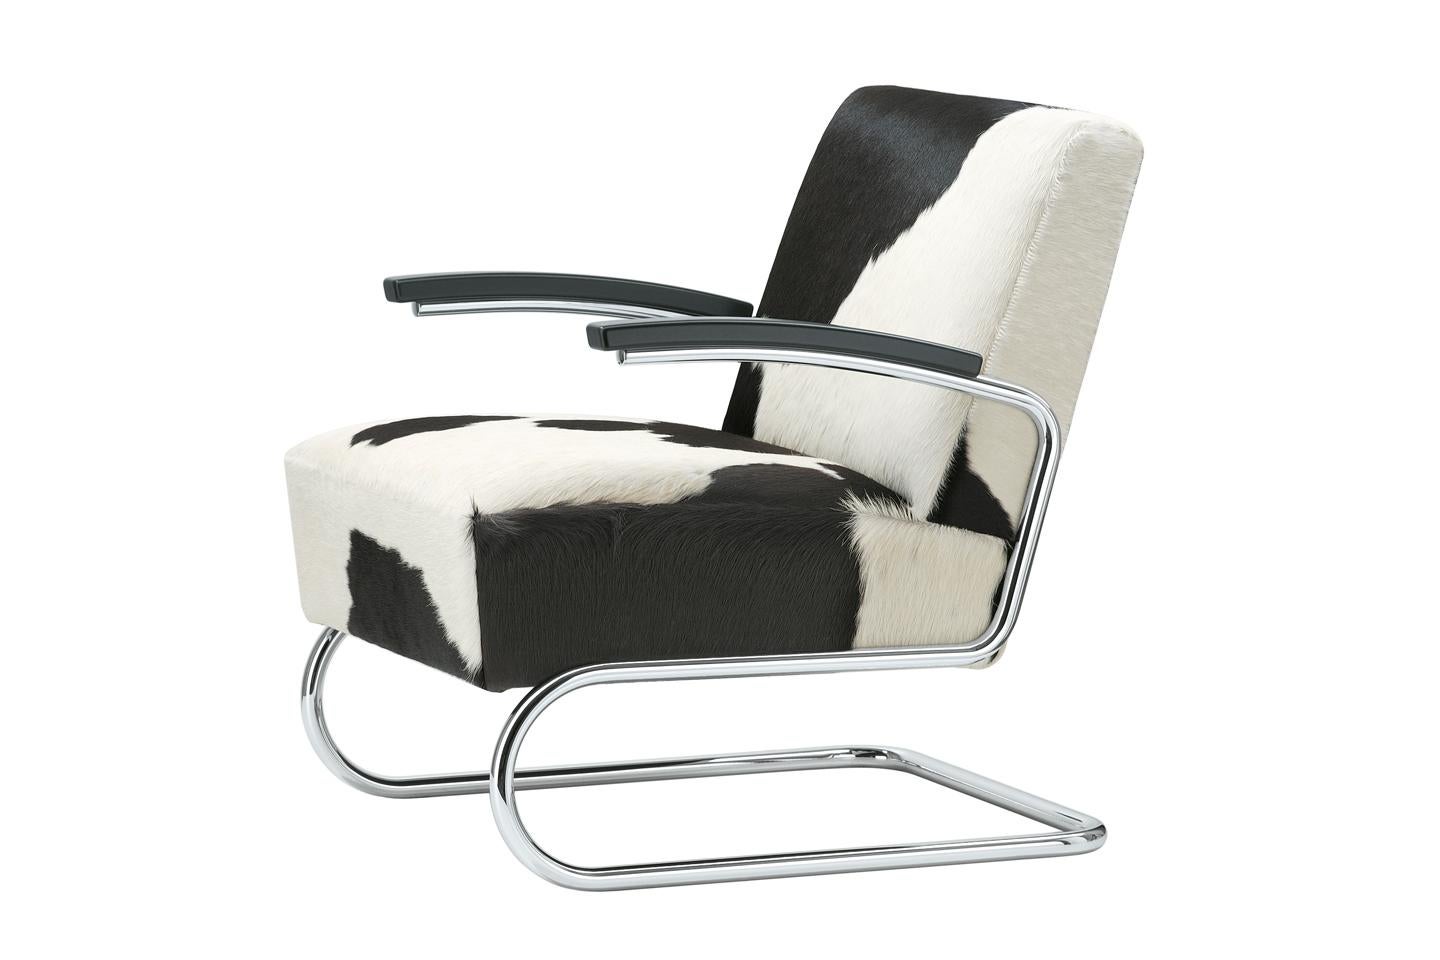 Gamme S 411
Les propriétés remarquables de ce fauteuil sont l'élégance, l'intemporalité et un confort d'assise exceptionnel. Il y a une légèreté que seul un modèle en porte-à-faux peut avoir. Alors que les premières chaises en acier tubulaire des